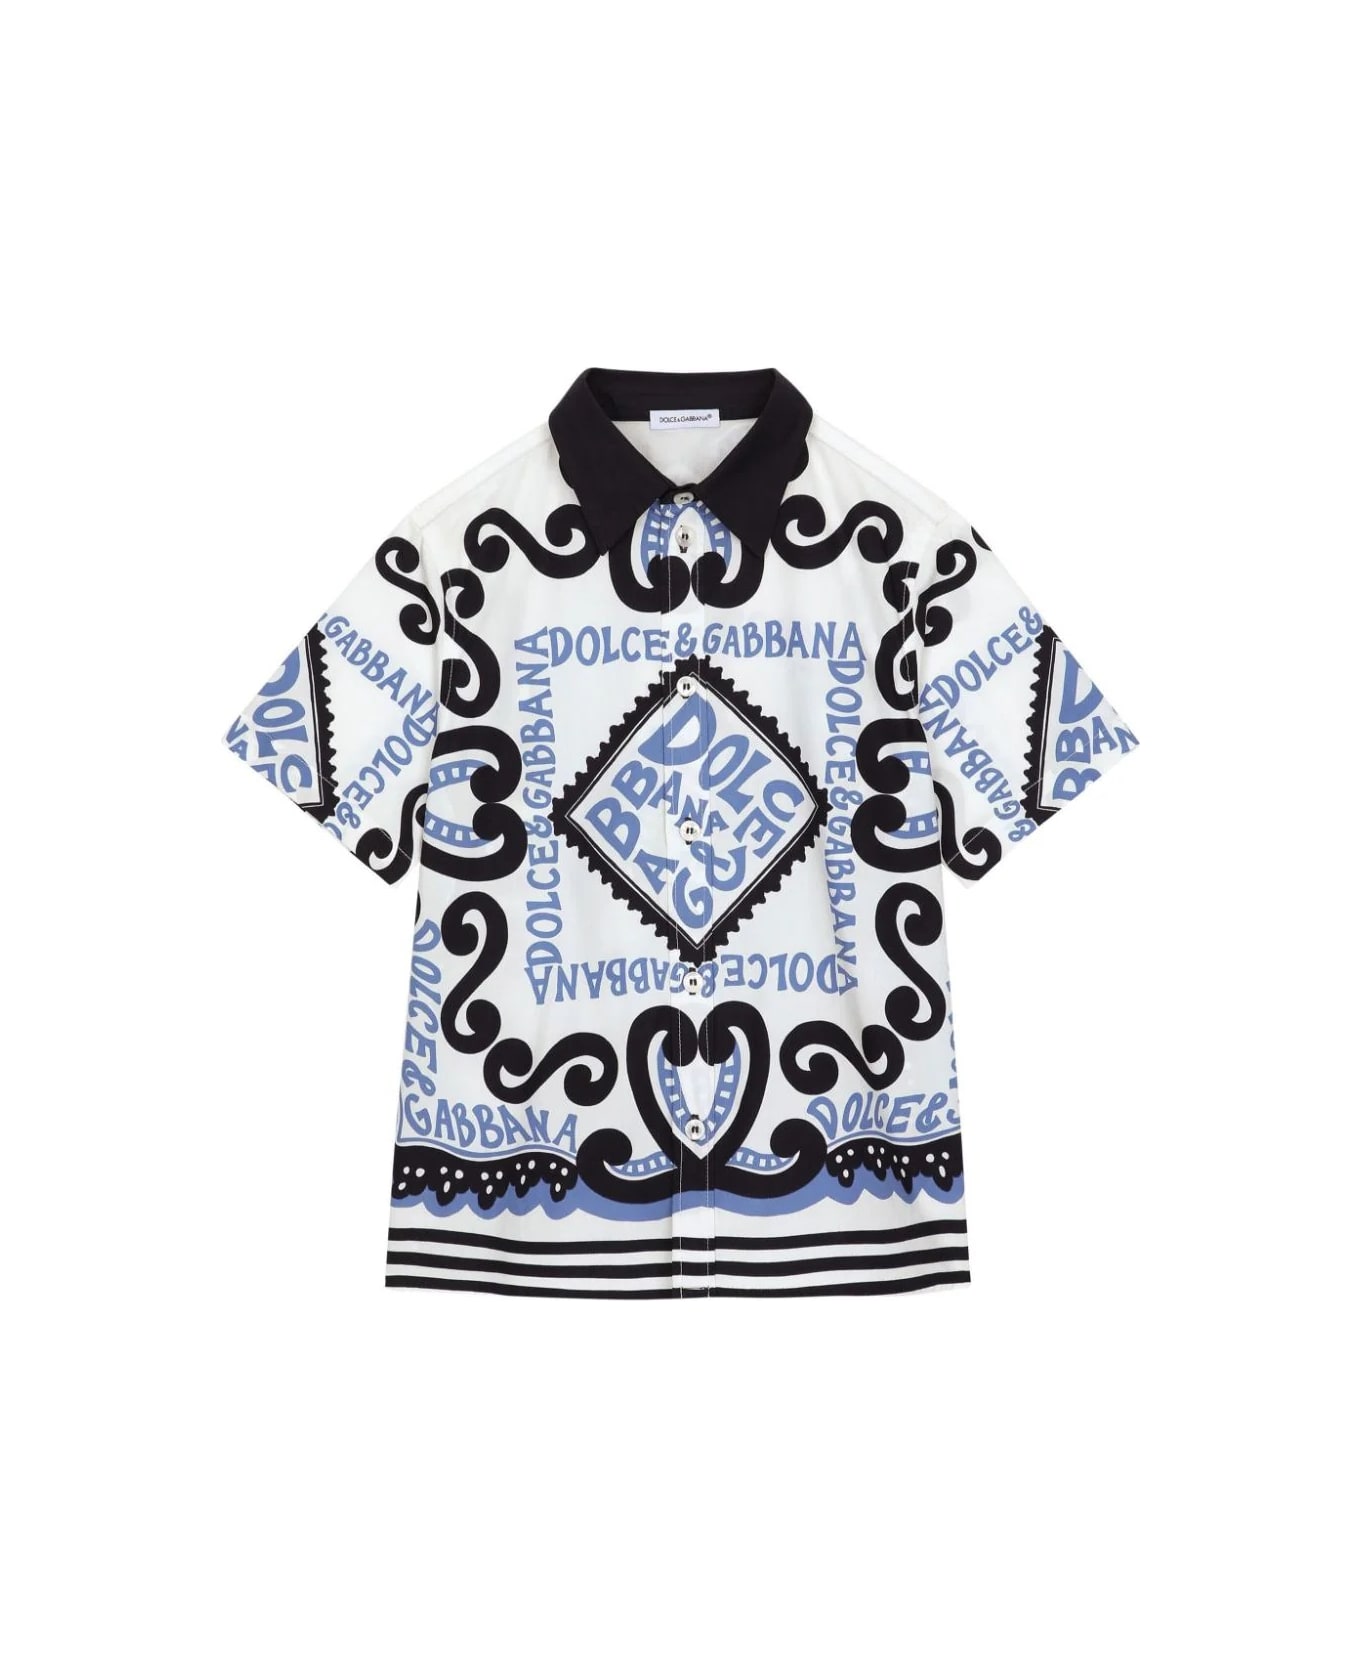 Dolce & Gabbana Poplin Shirt With Marina Print - Dolce & Gabbana 733978 iPhone X XS